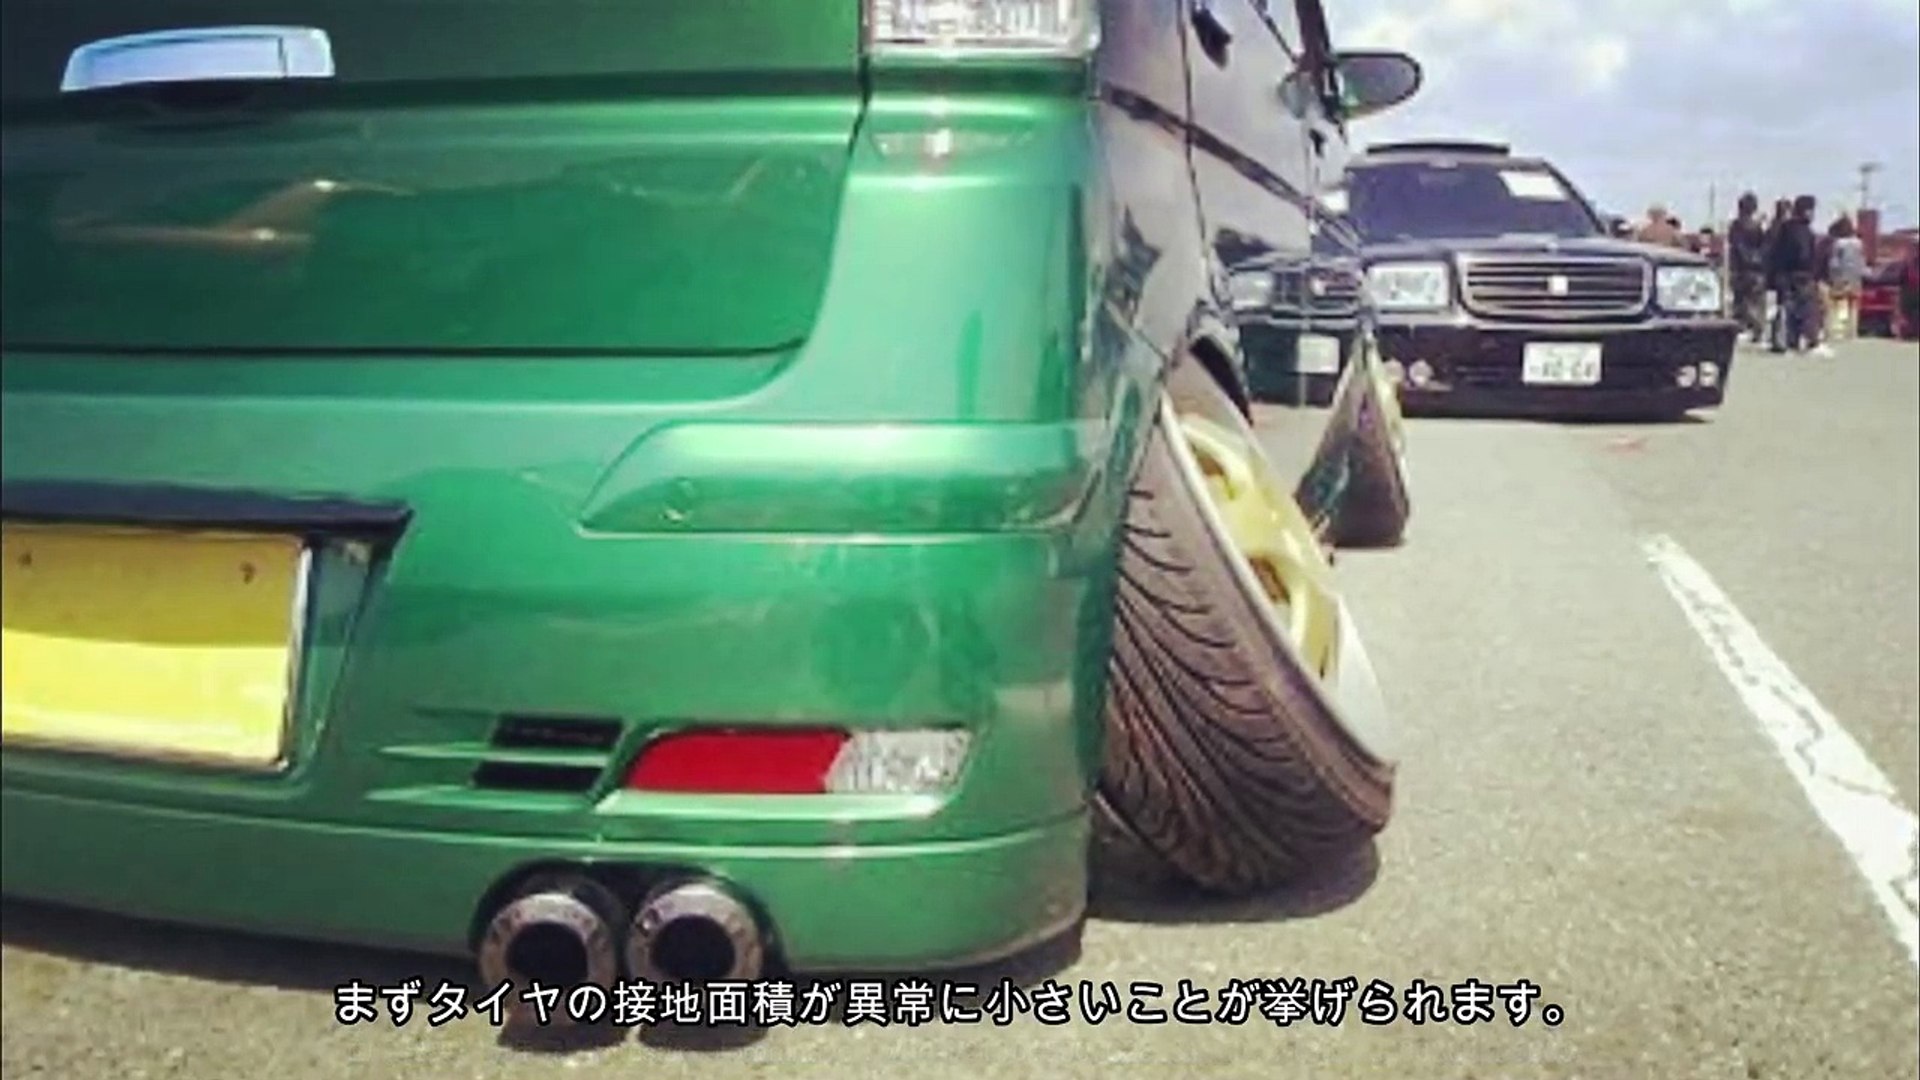 ハの字のタイヤの車が いかに危険か分かる動画 悪質dqn仕様車 動画 Dailymotion